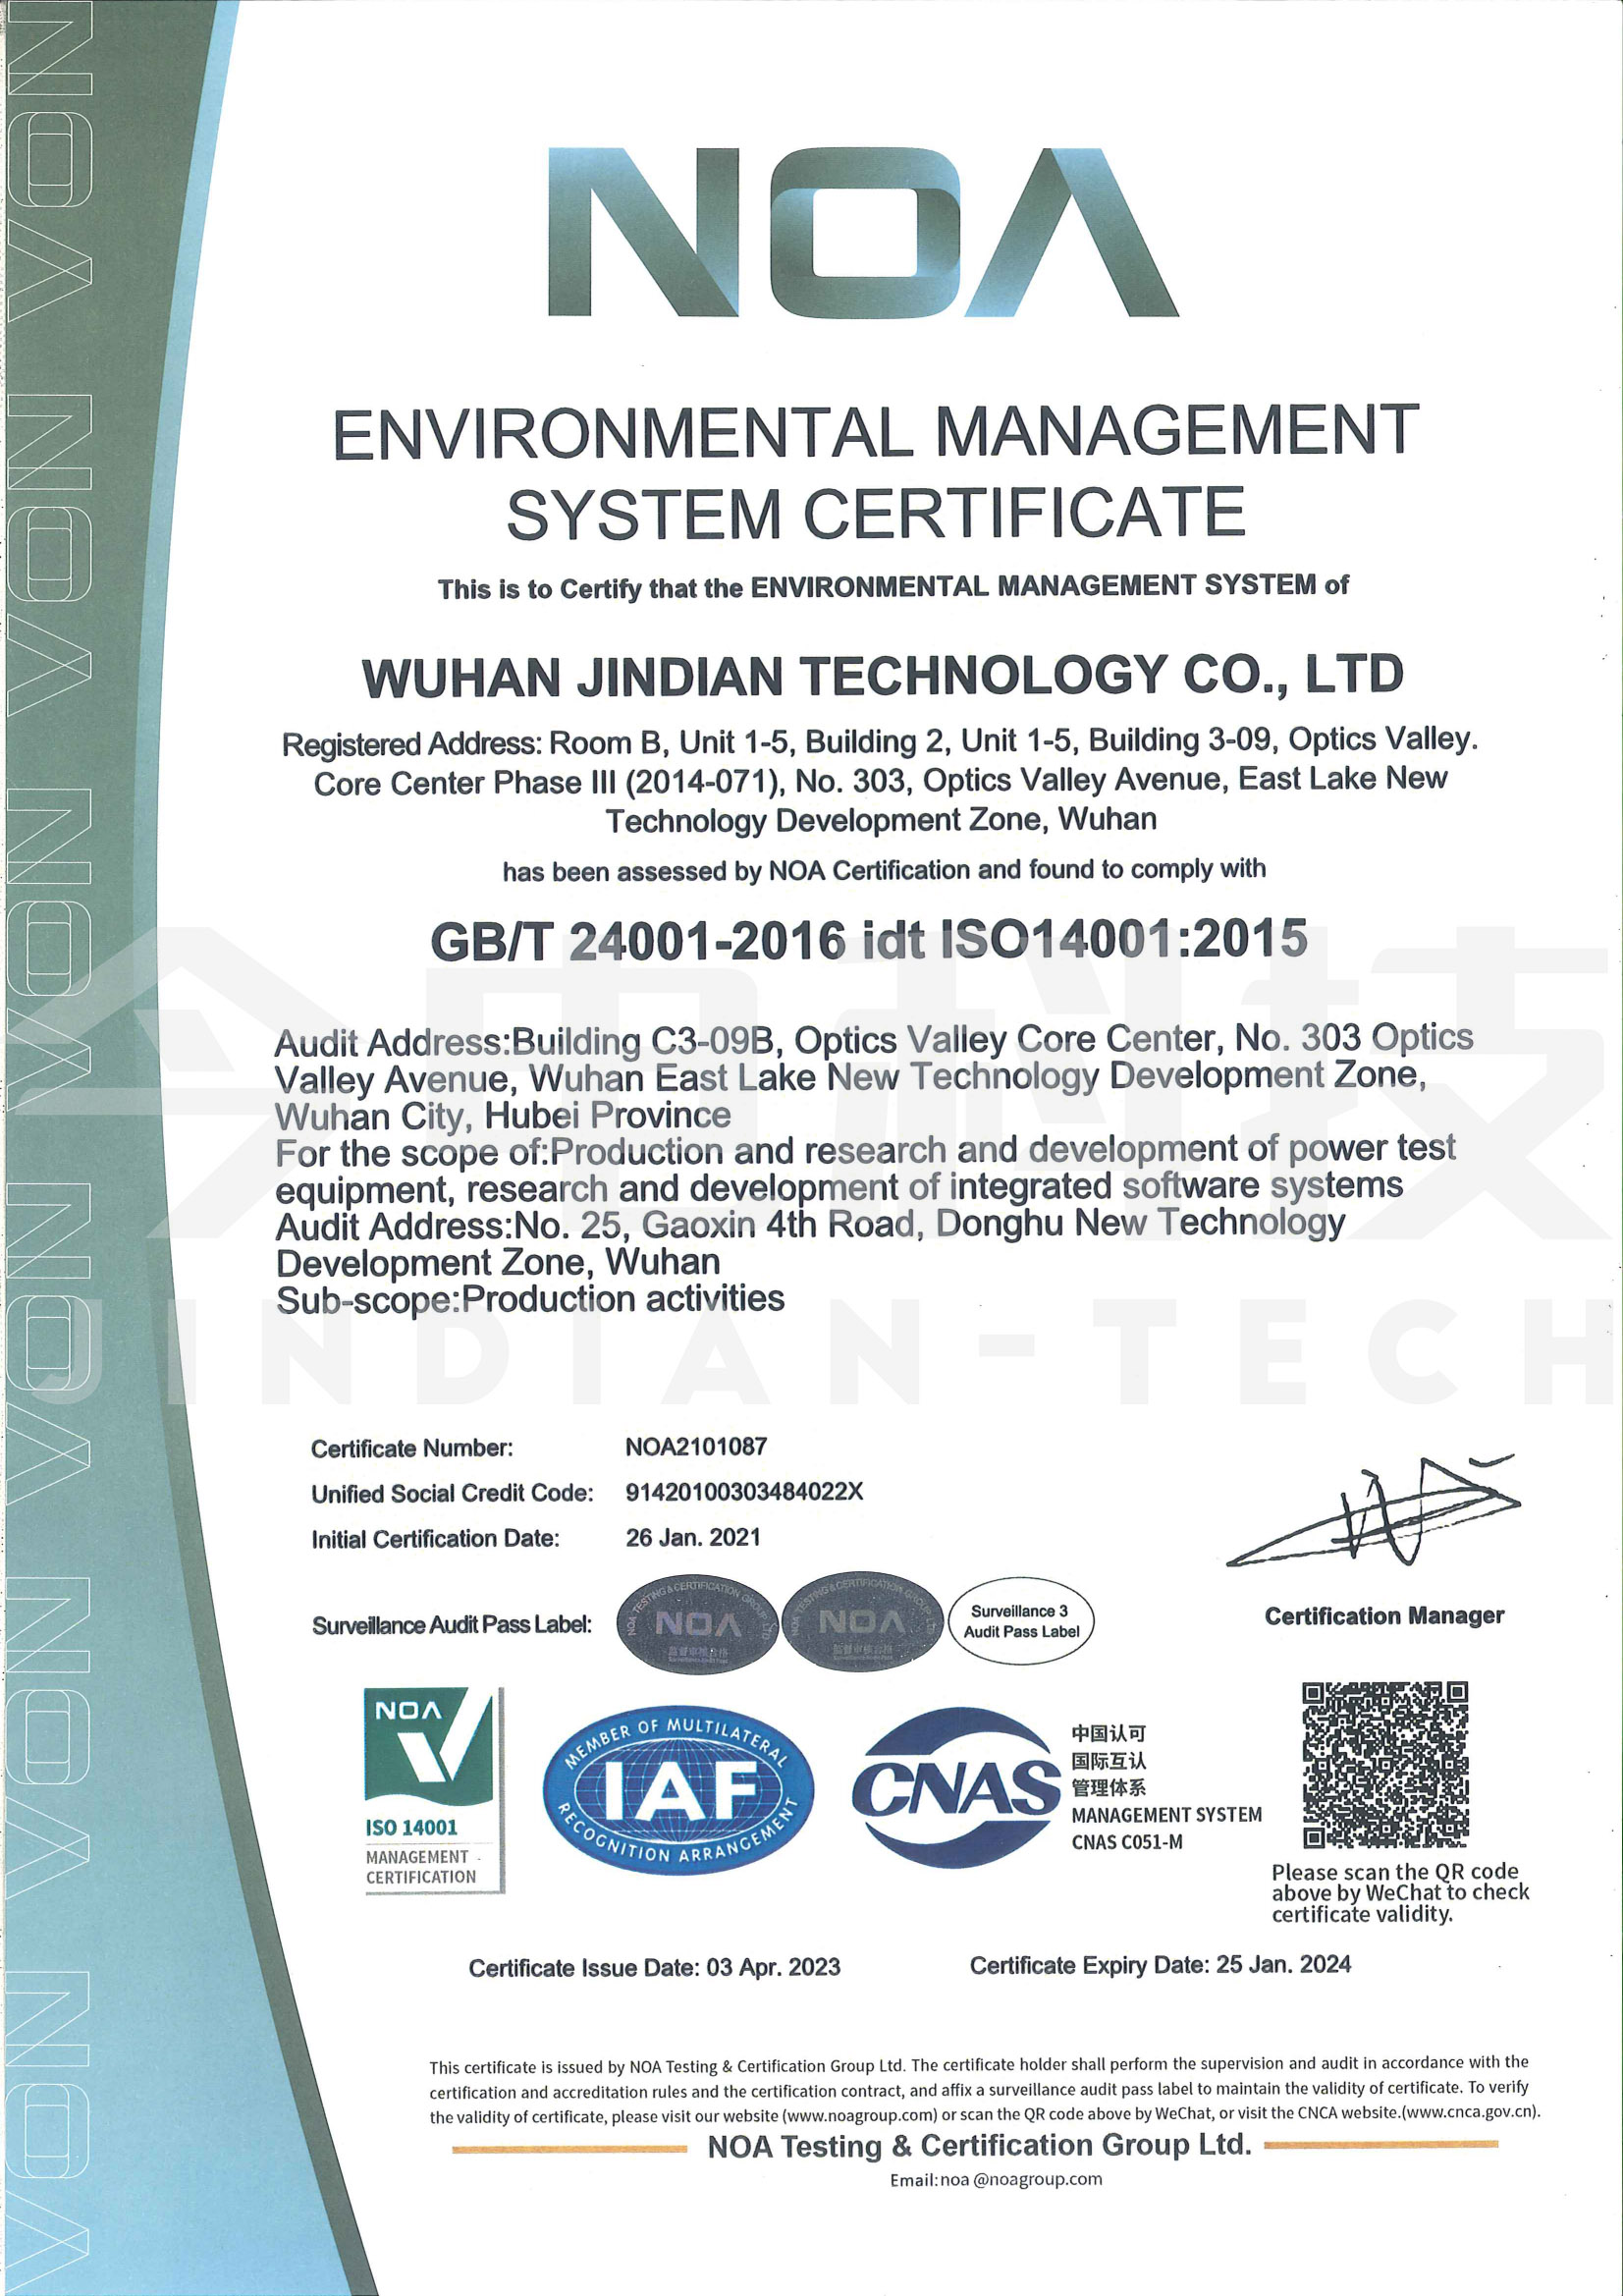  环境管理体系证书(英文版)